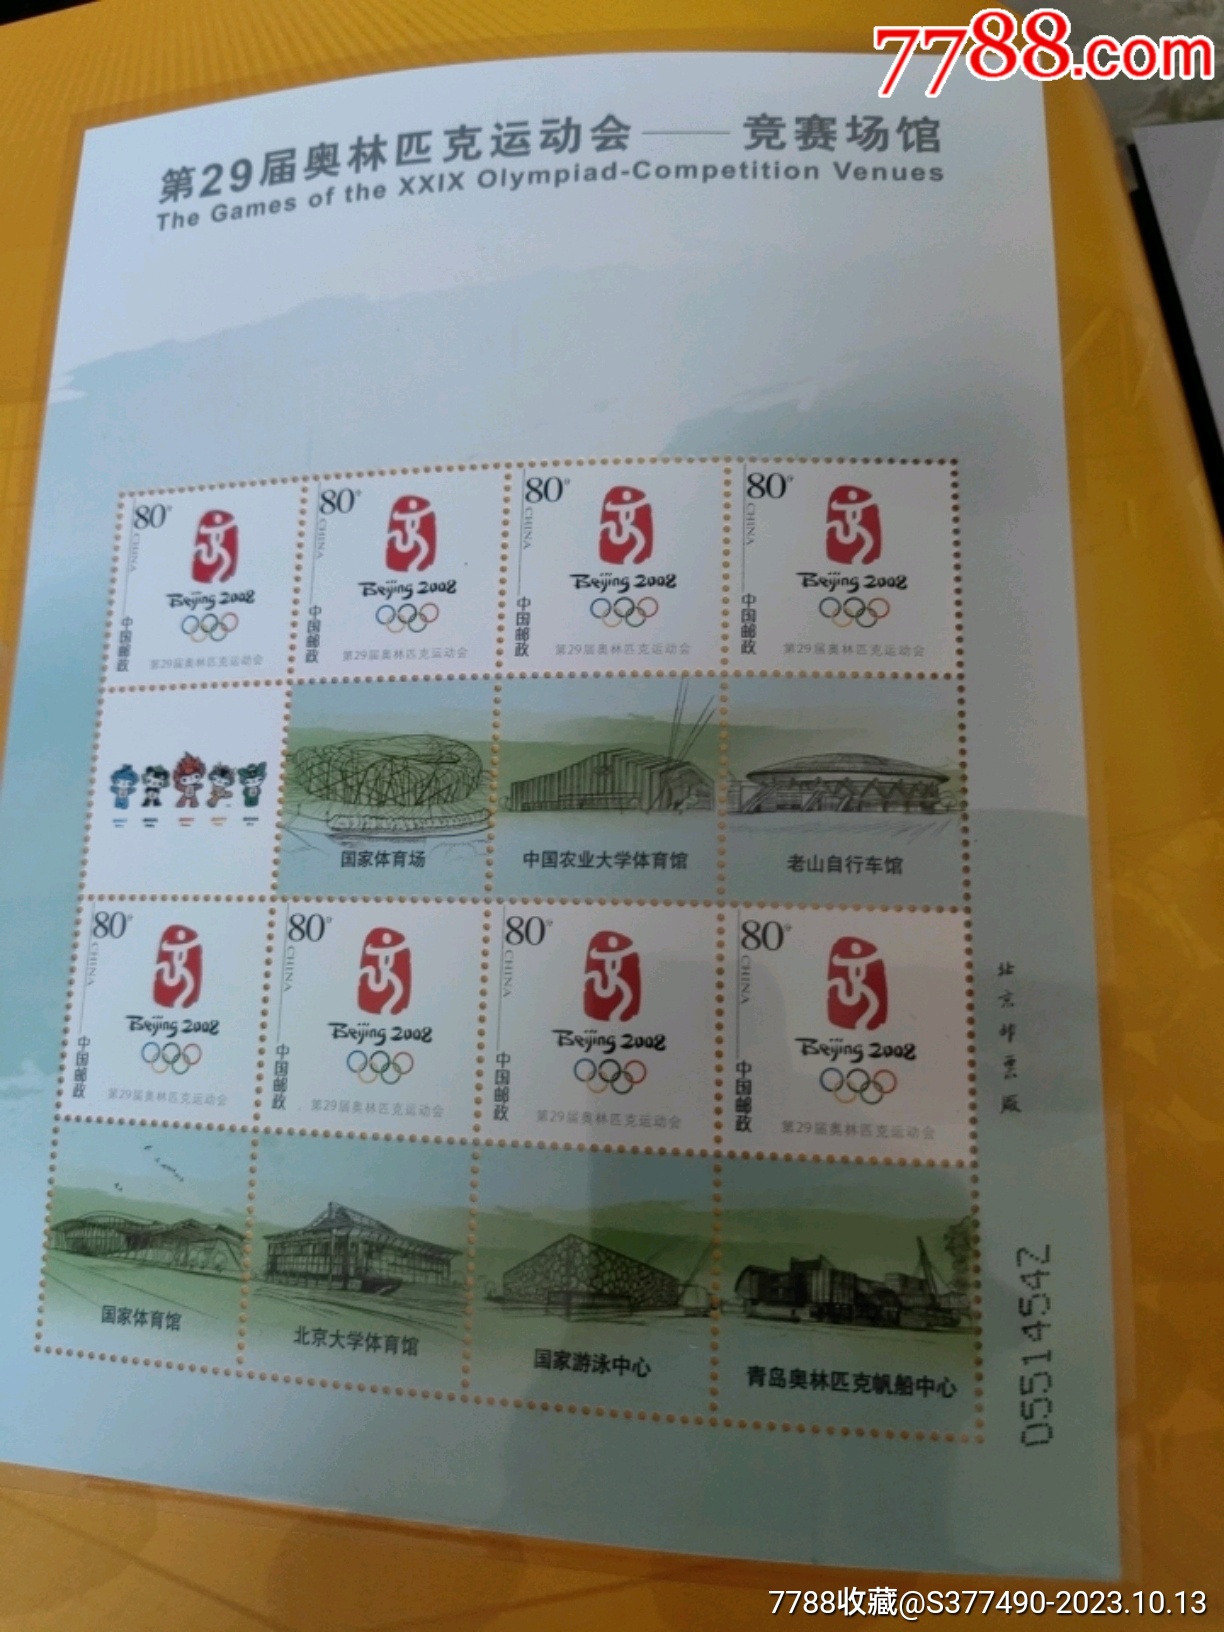 2008奧運會竟賽場館郵票小版張大全冊_價格276元_第26張_